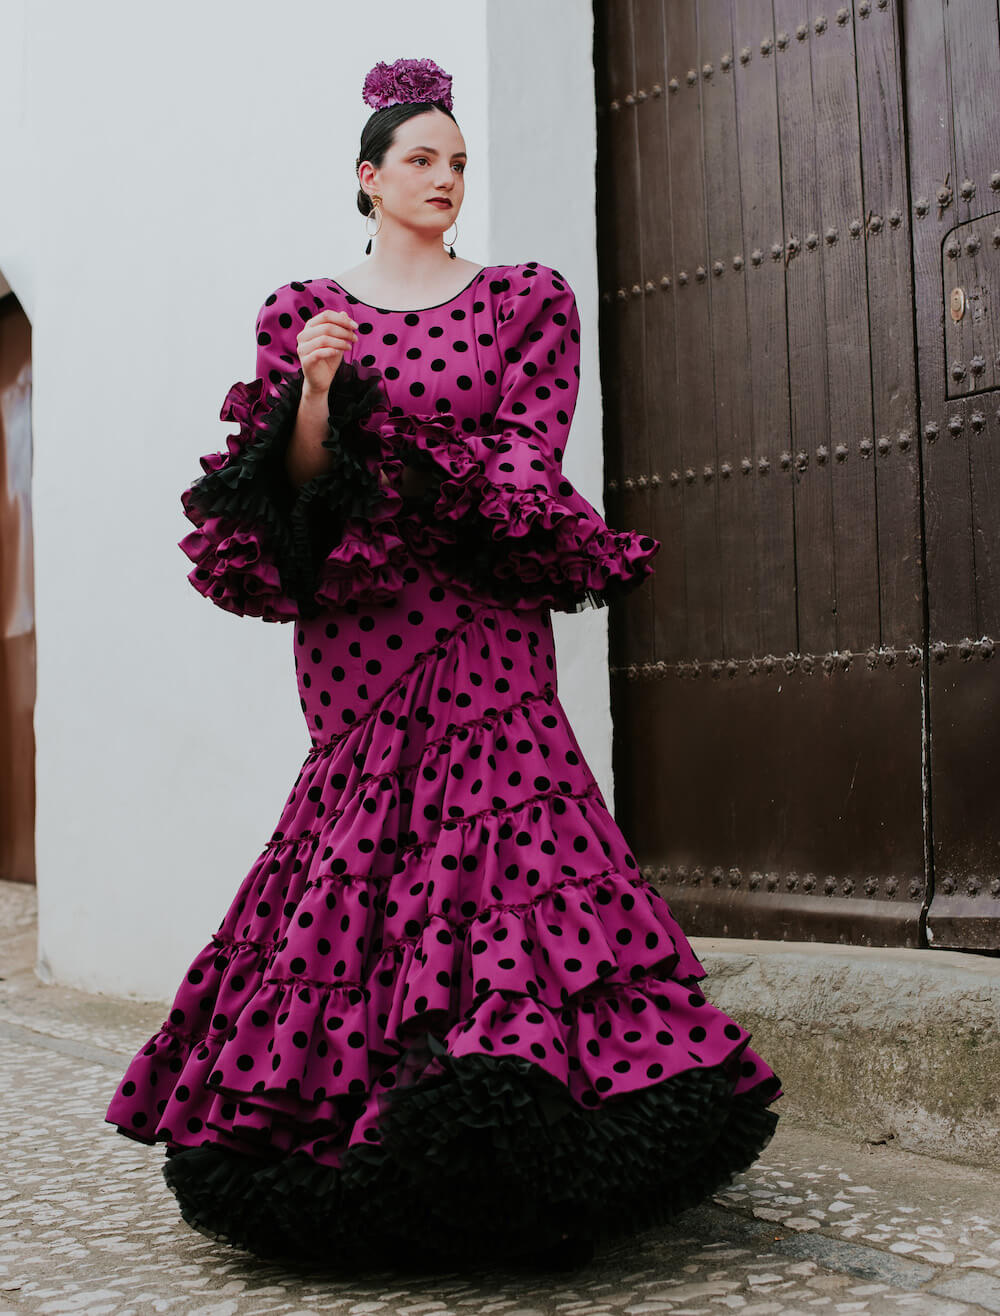 Isabel hernandez artesania_flamenca_batas_flamencas_modelo encanto-3